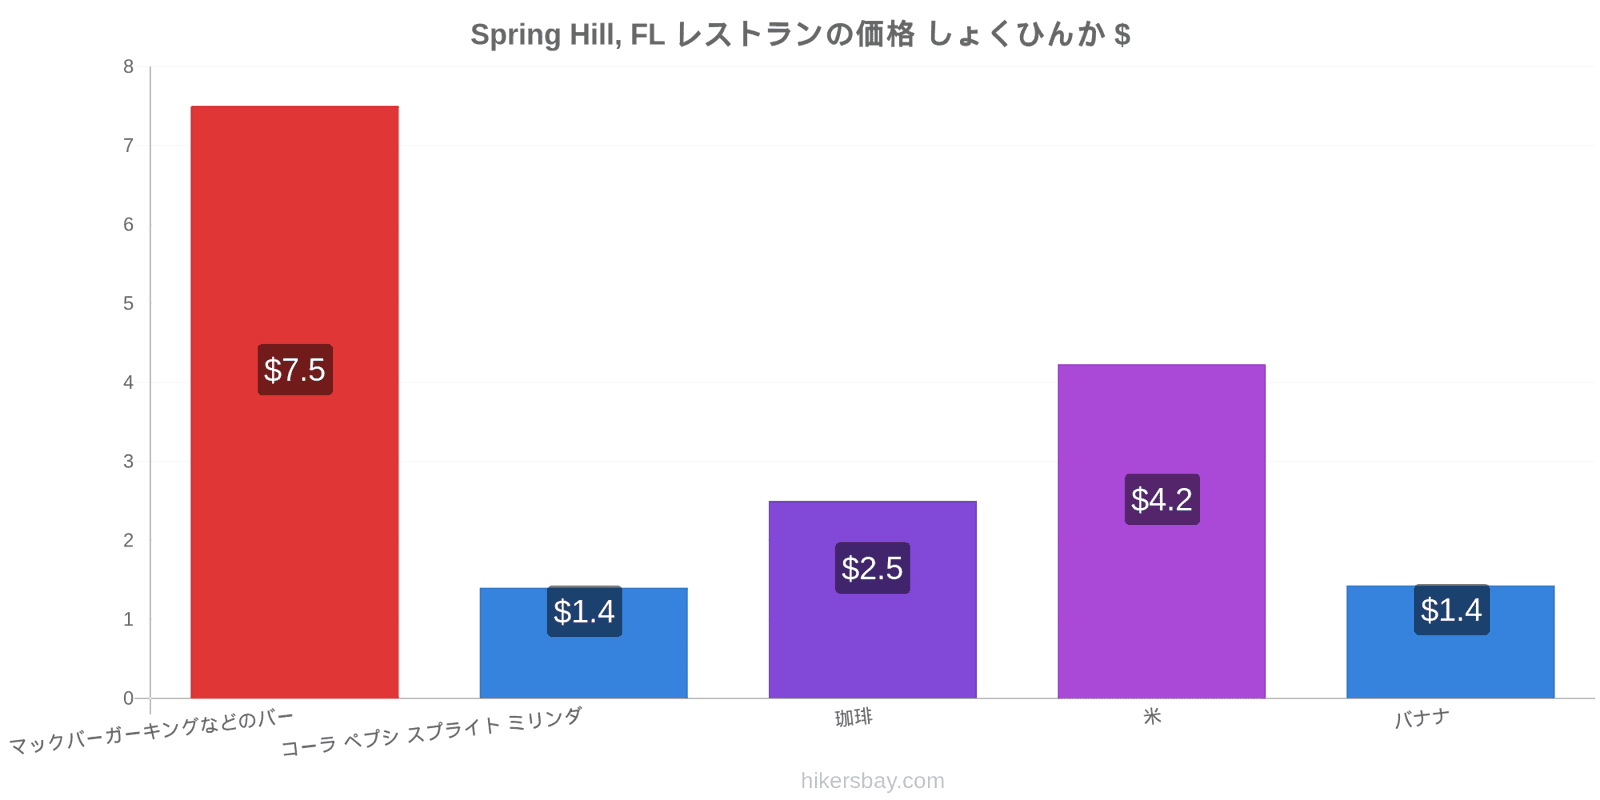 Spring Hill, FL 価格の変更 hikersbay.com